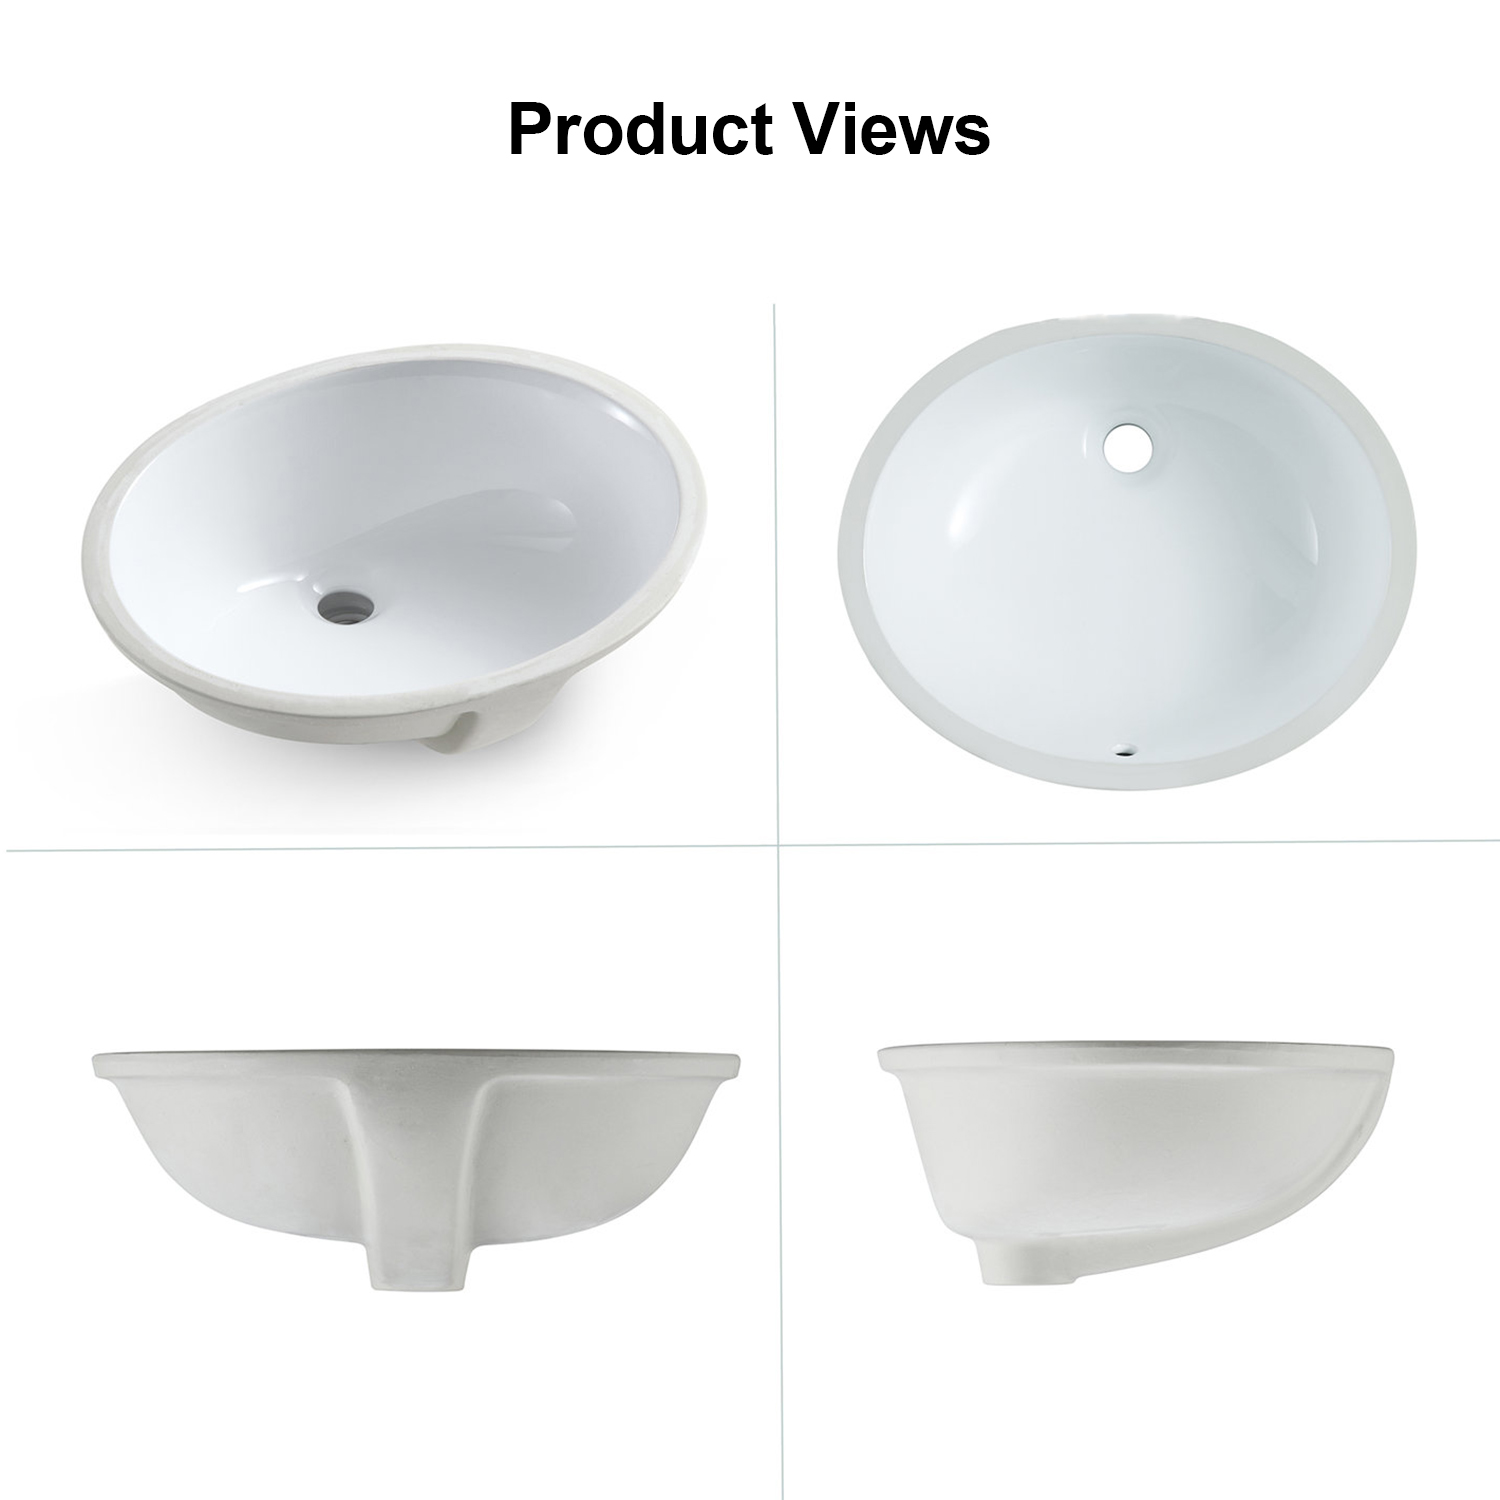 Lavabo da bagno ovale sottopiano in porcellana smaltata Aquacubic Vanity Ceramic Vessel